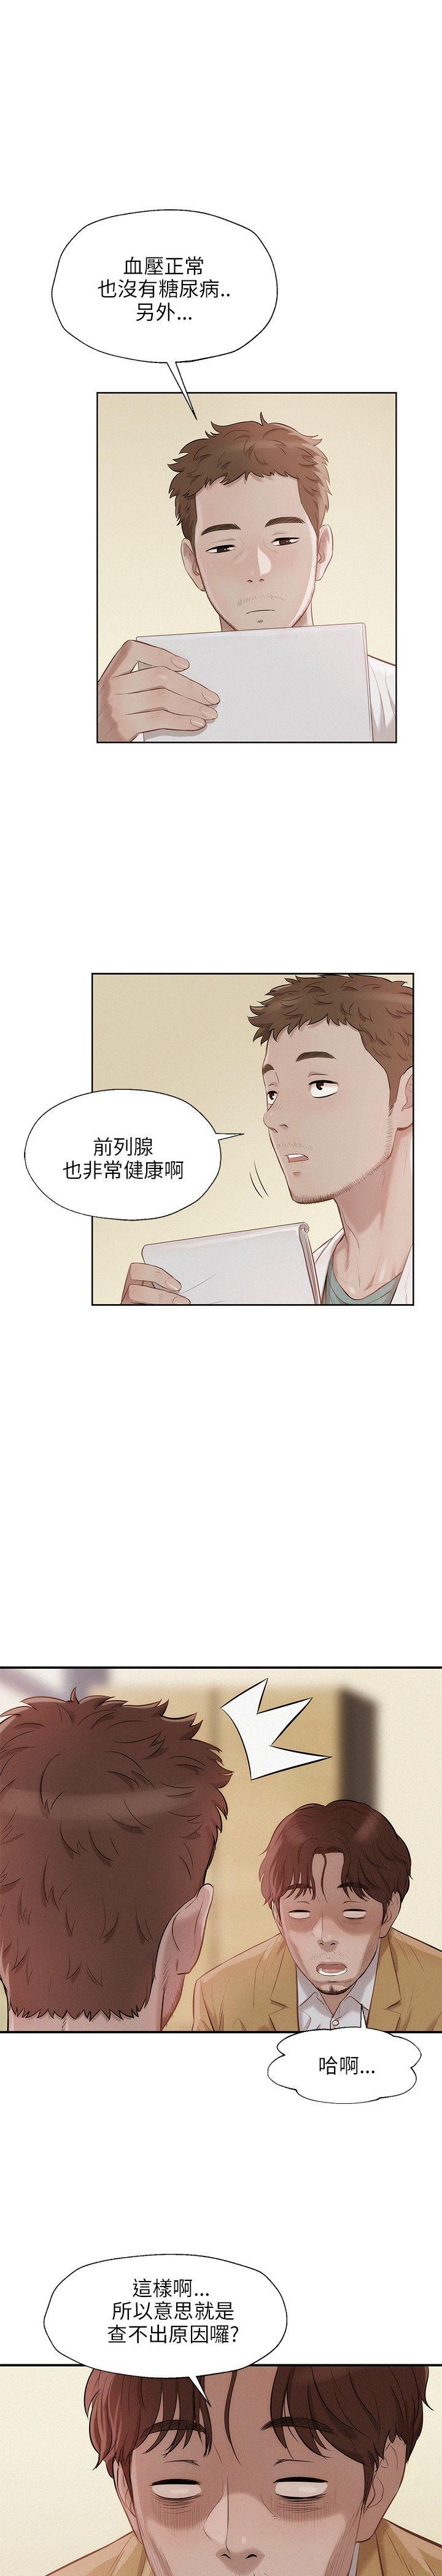 韩国污漫画 新生日記 第13话阳痿 4